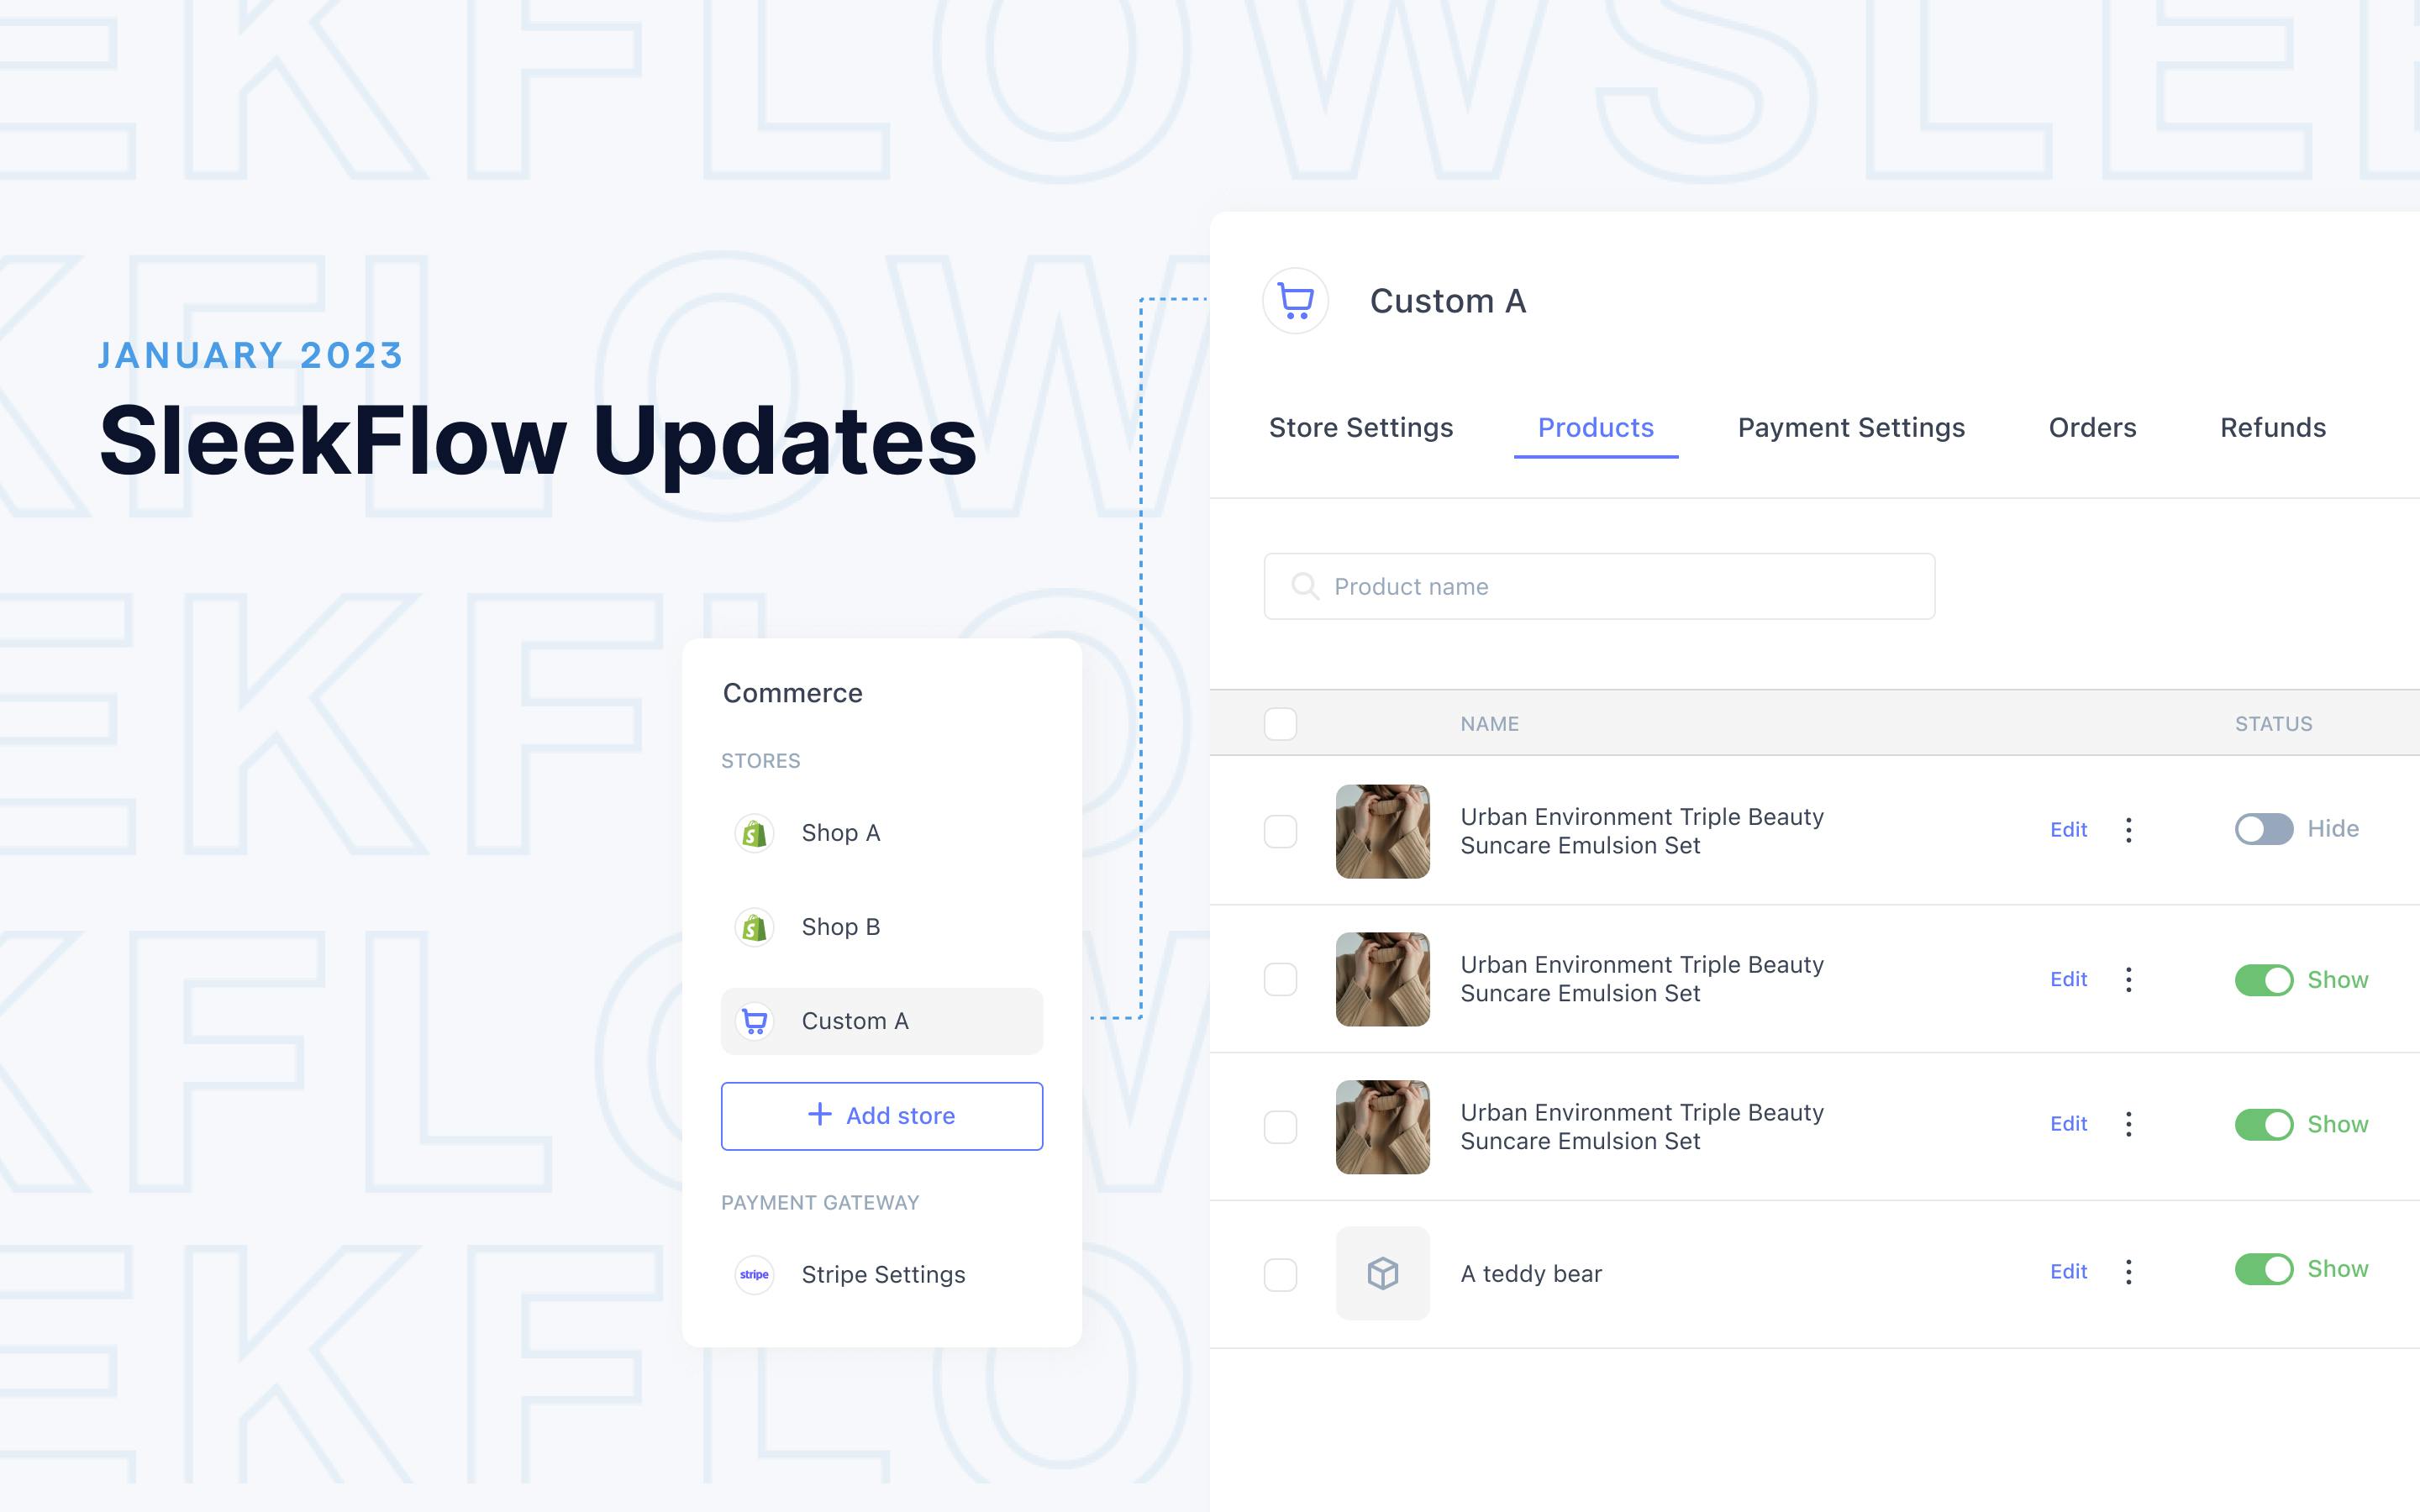 Terbaru di SleekFlow: Buat dan tampilkan katalog produk di aplikasi chatting dalam 5 menit